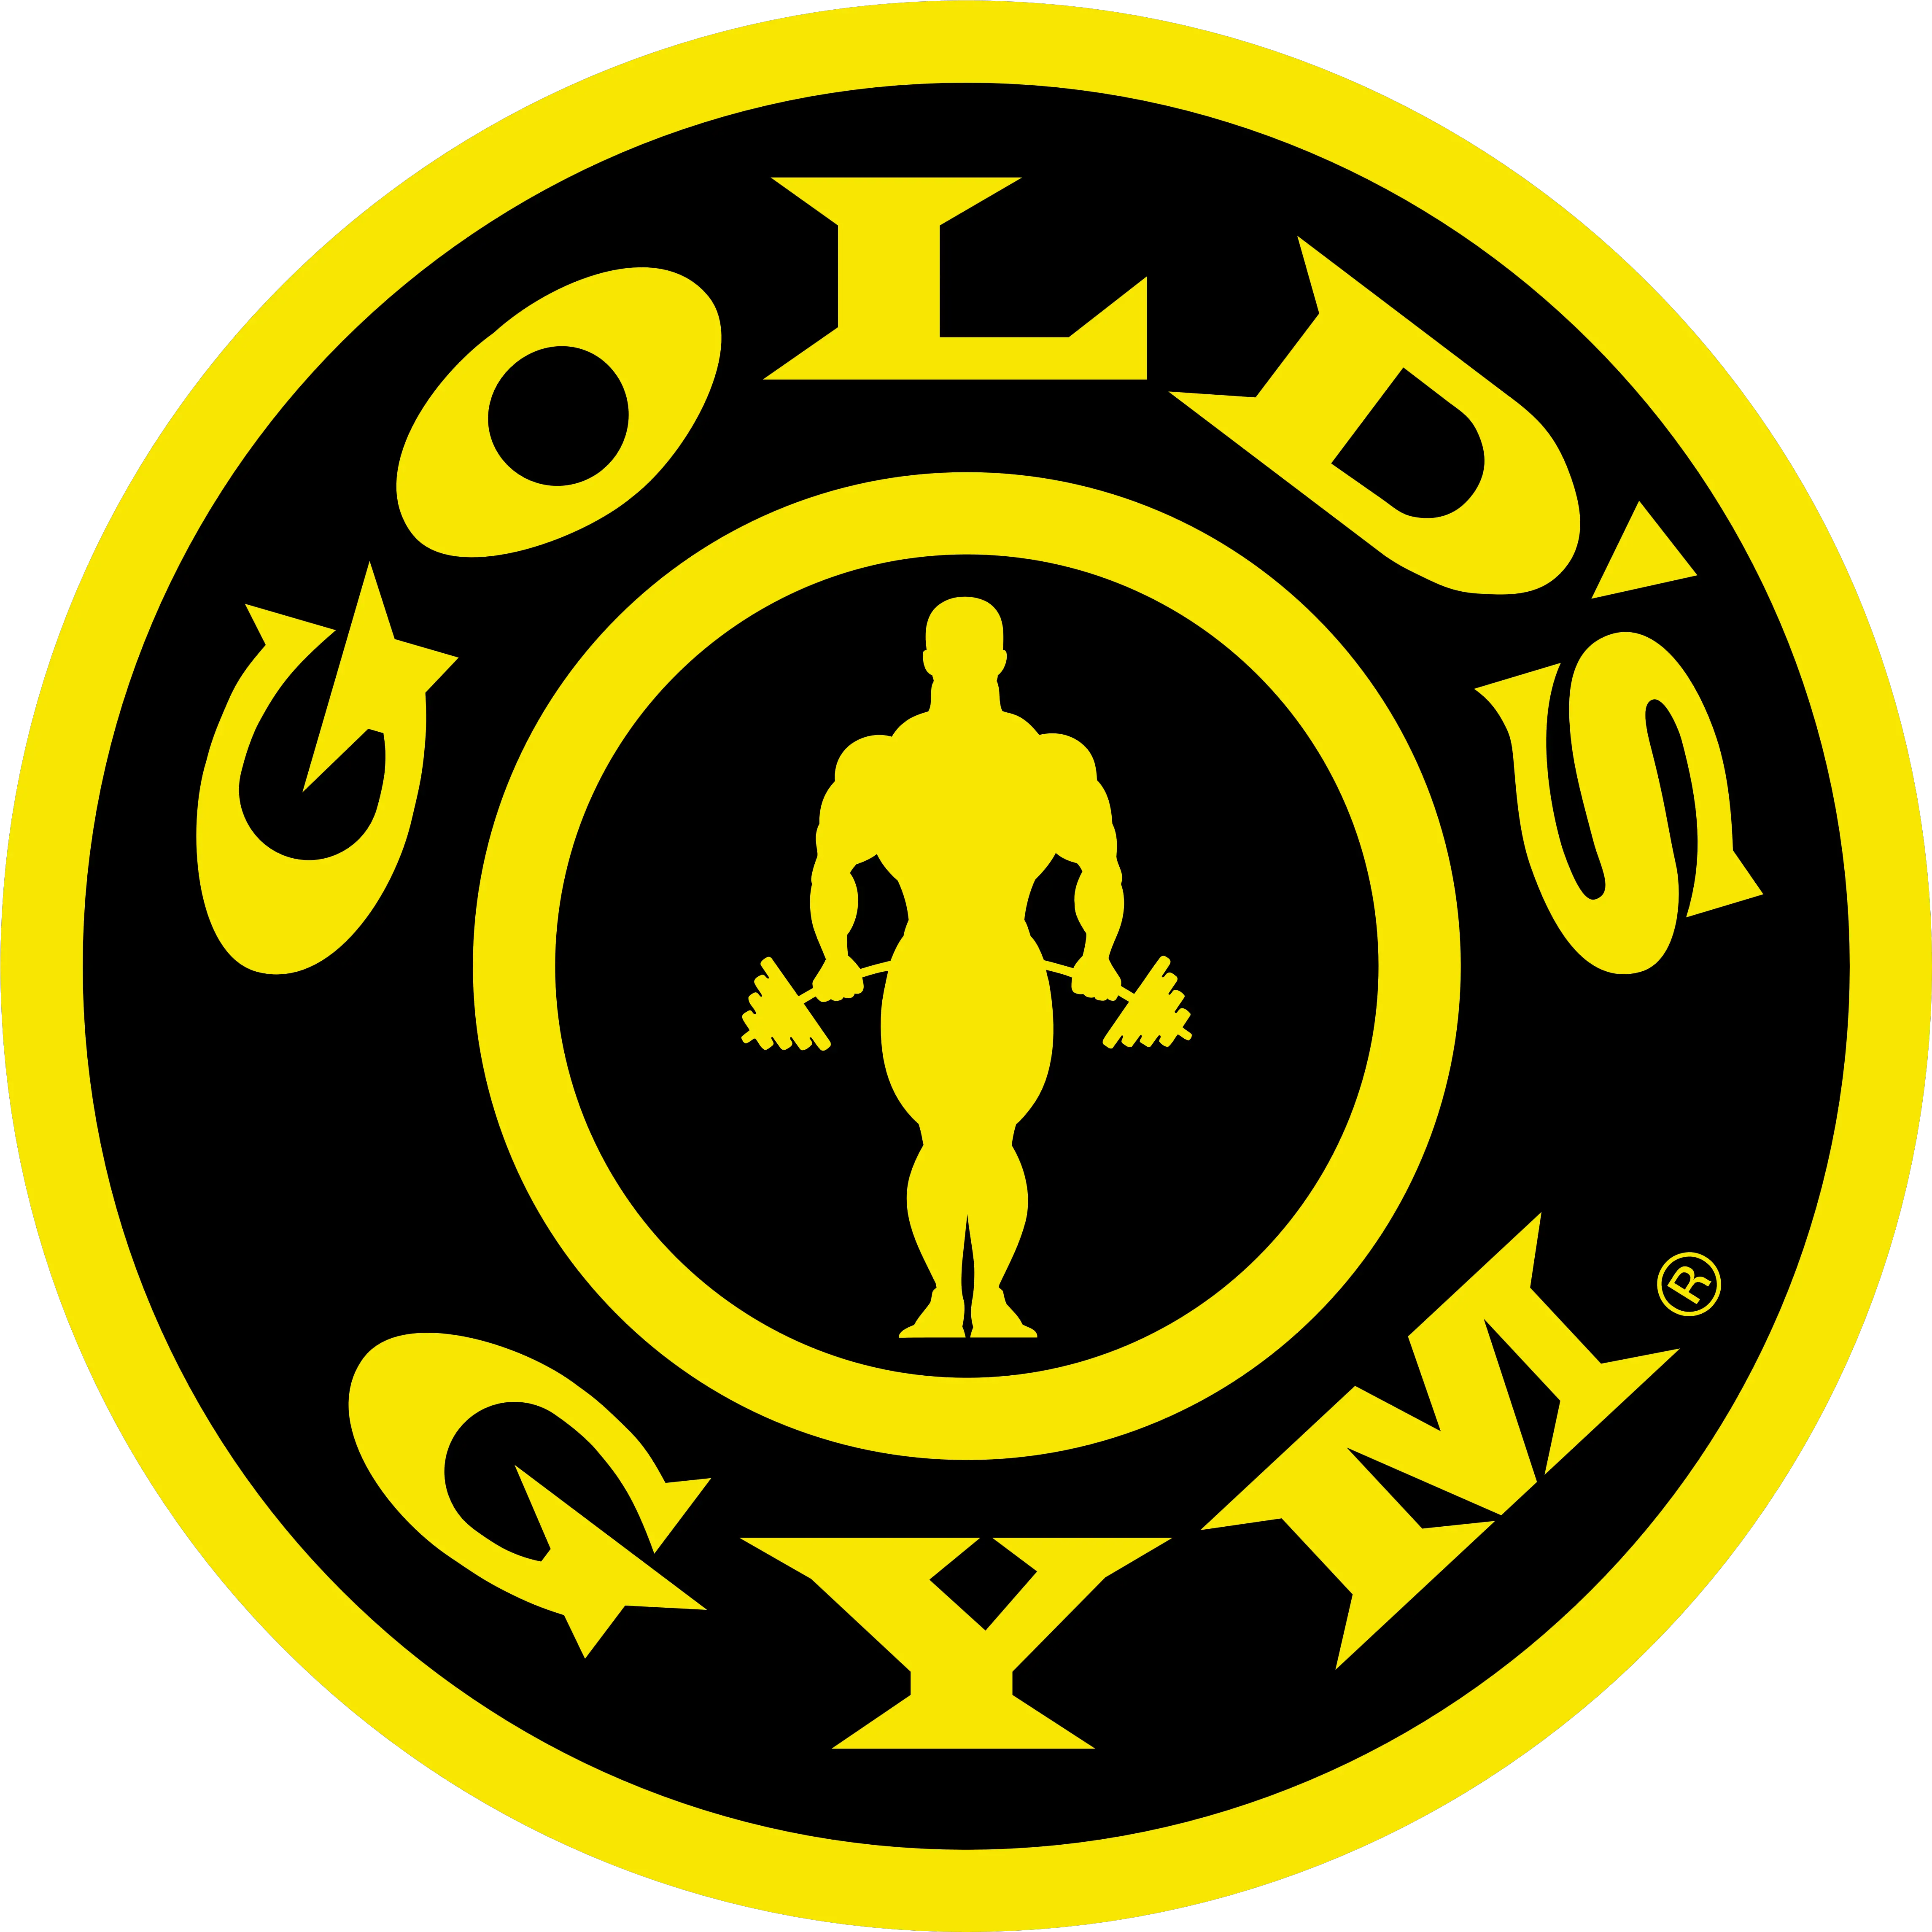 Golds Gym Gold Gym Logo Hd Png Gym Logo